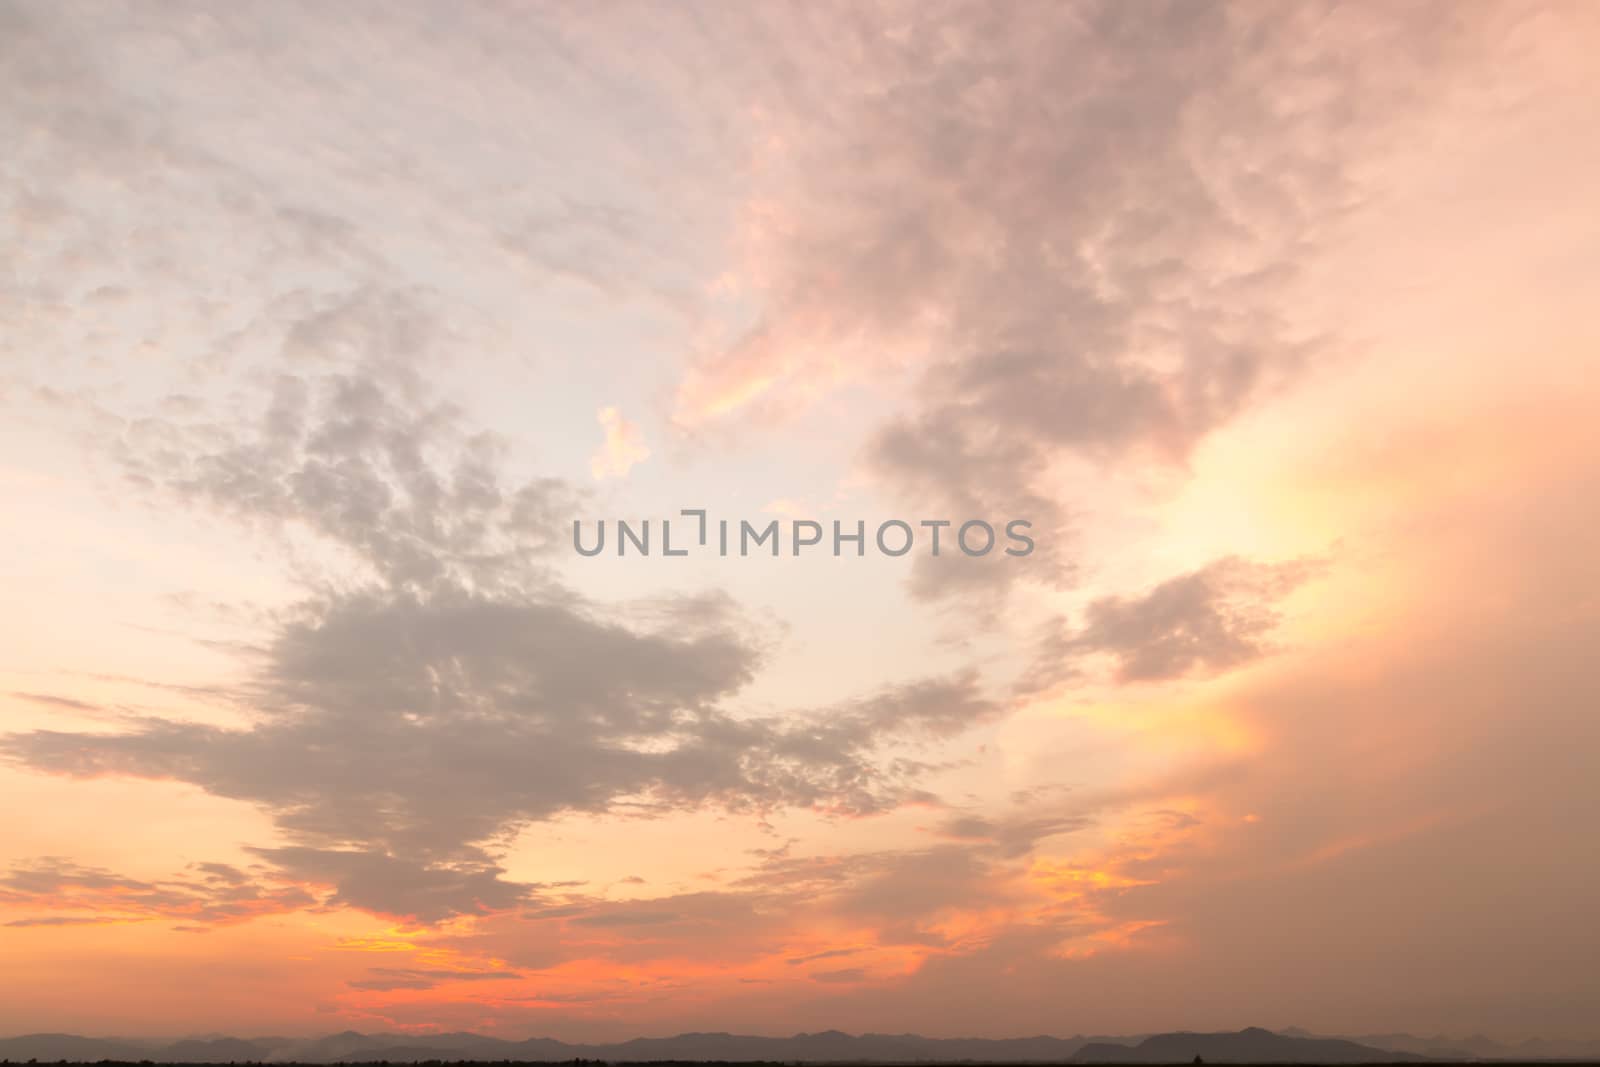 Sunset at National Park Khao Sam Roi Yot, Prachuab Khiri Khan province. Thailand